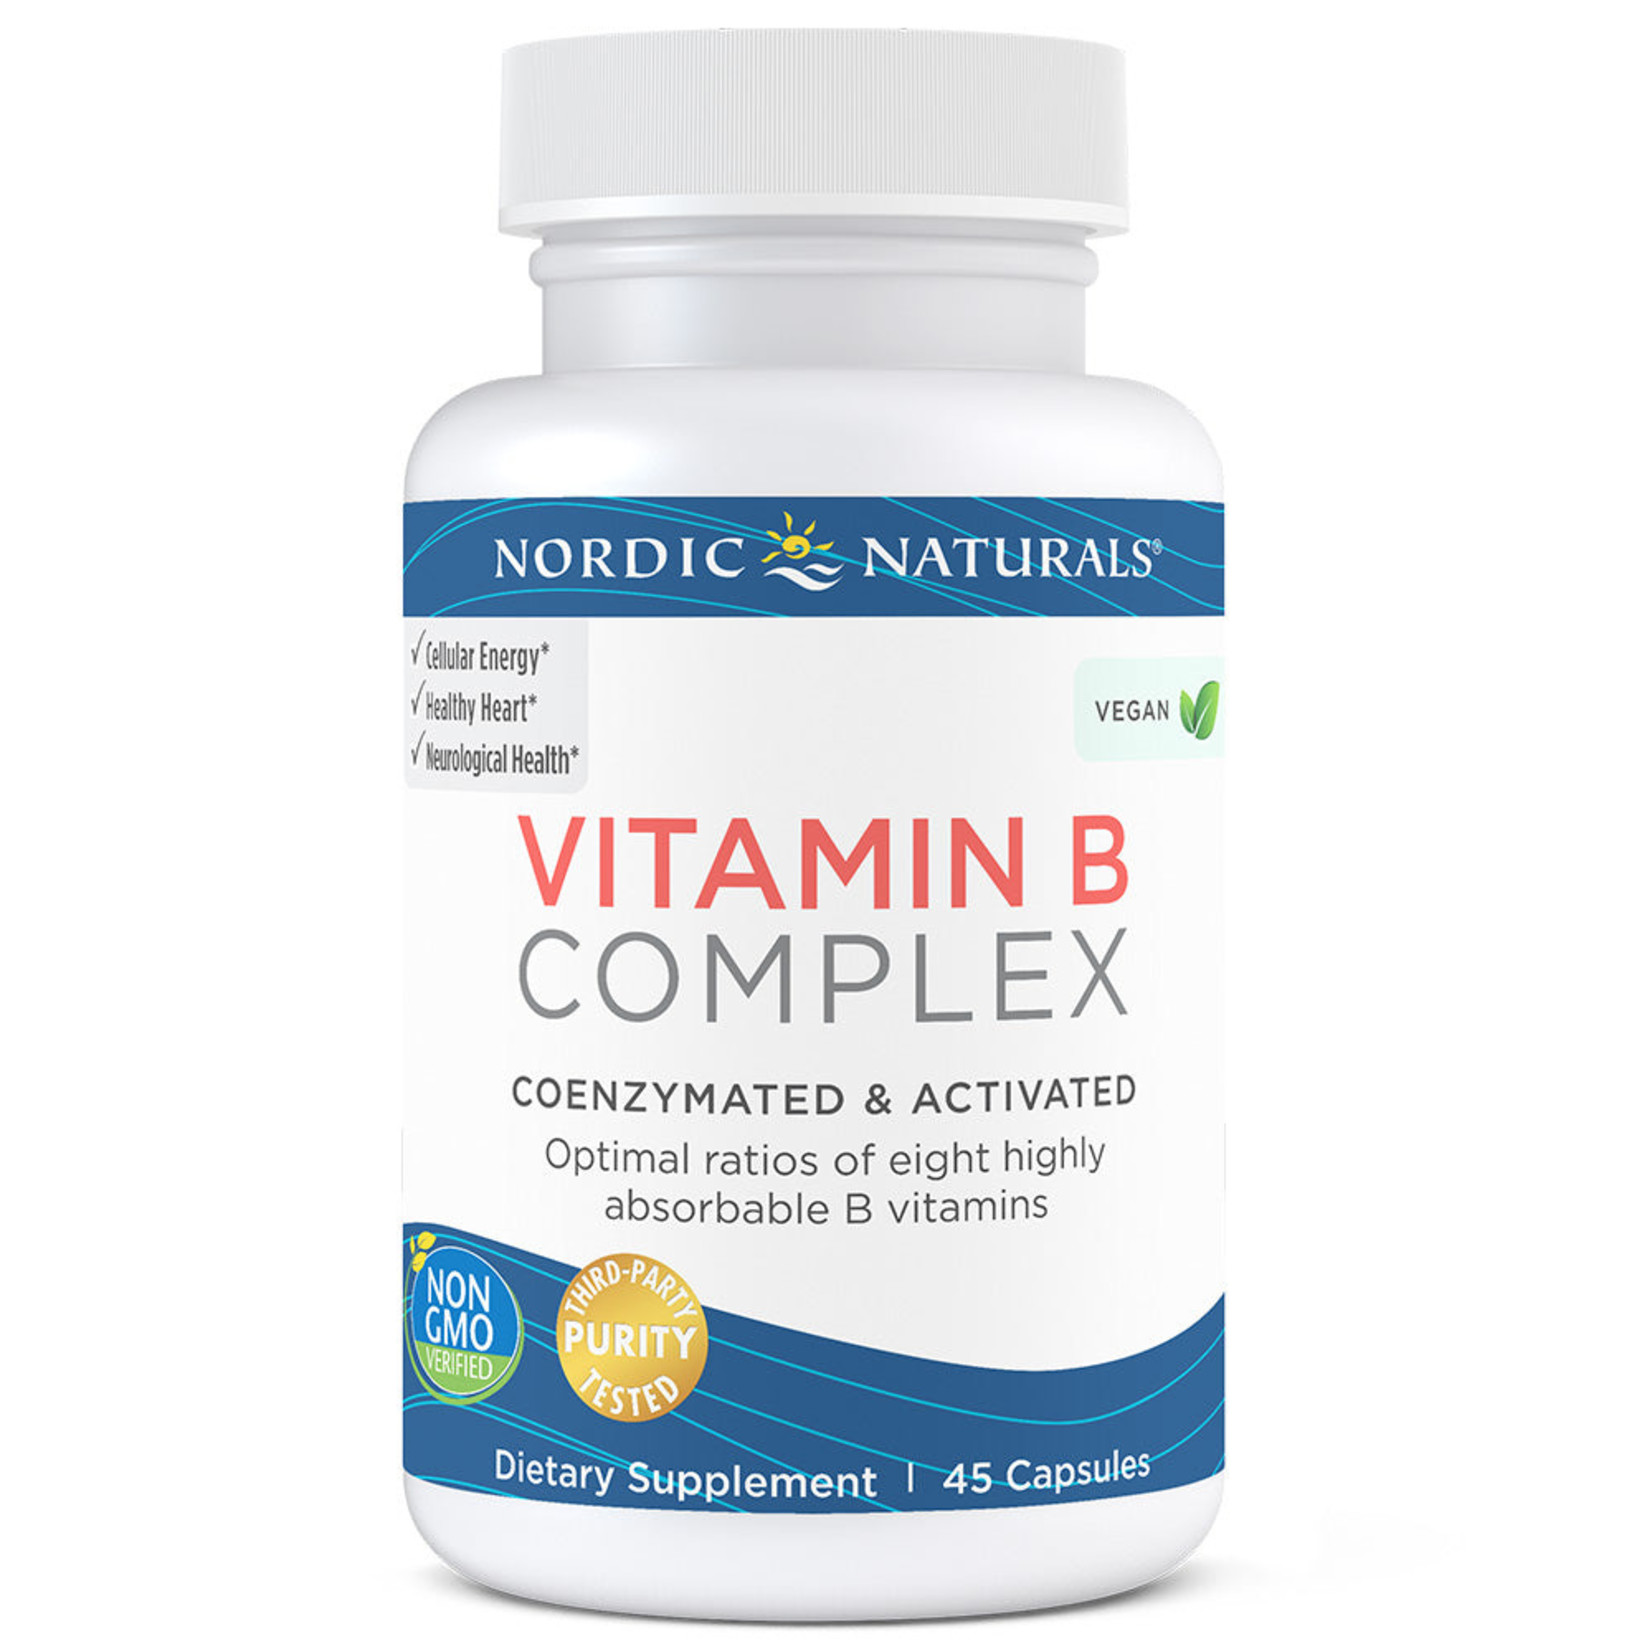 Nordic Naturals Nordic Naturals - Vitamin B Complex - 45 Capsules